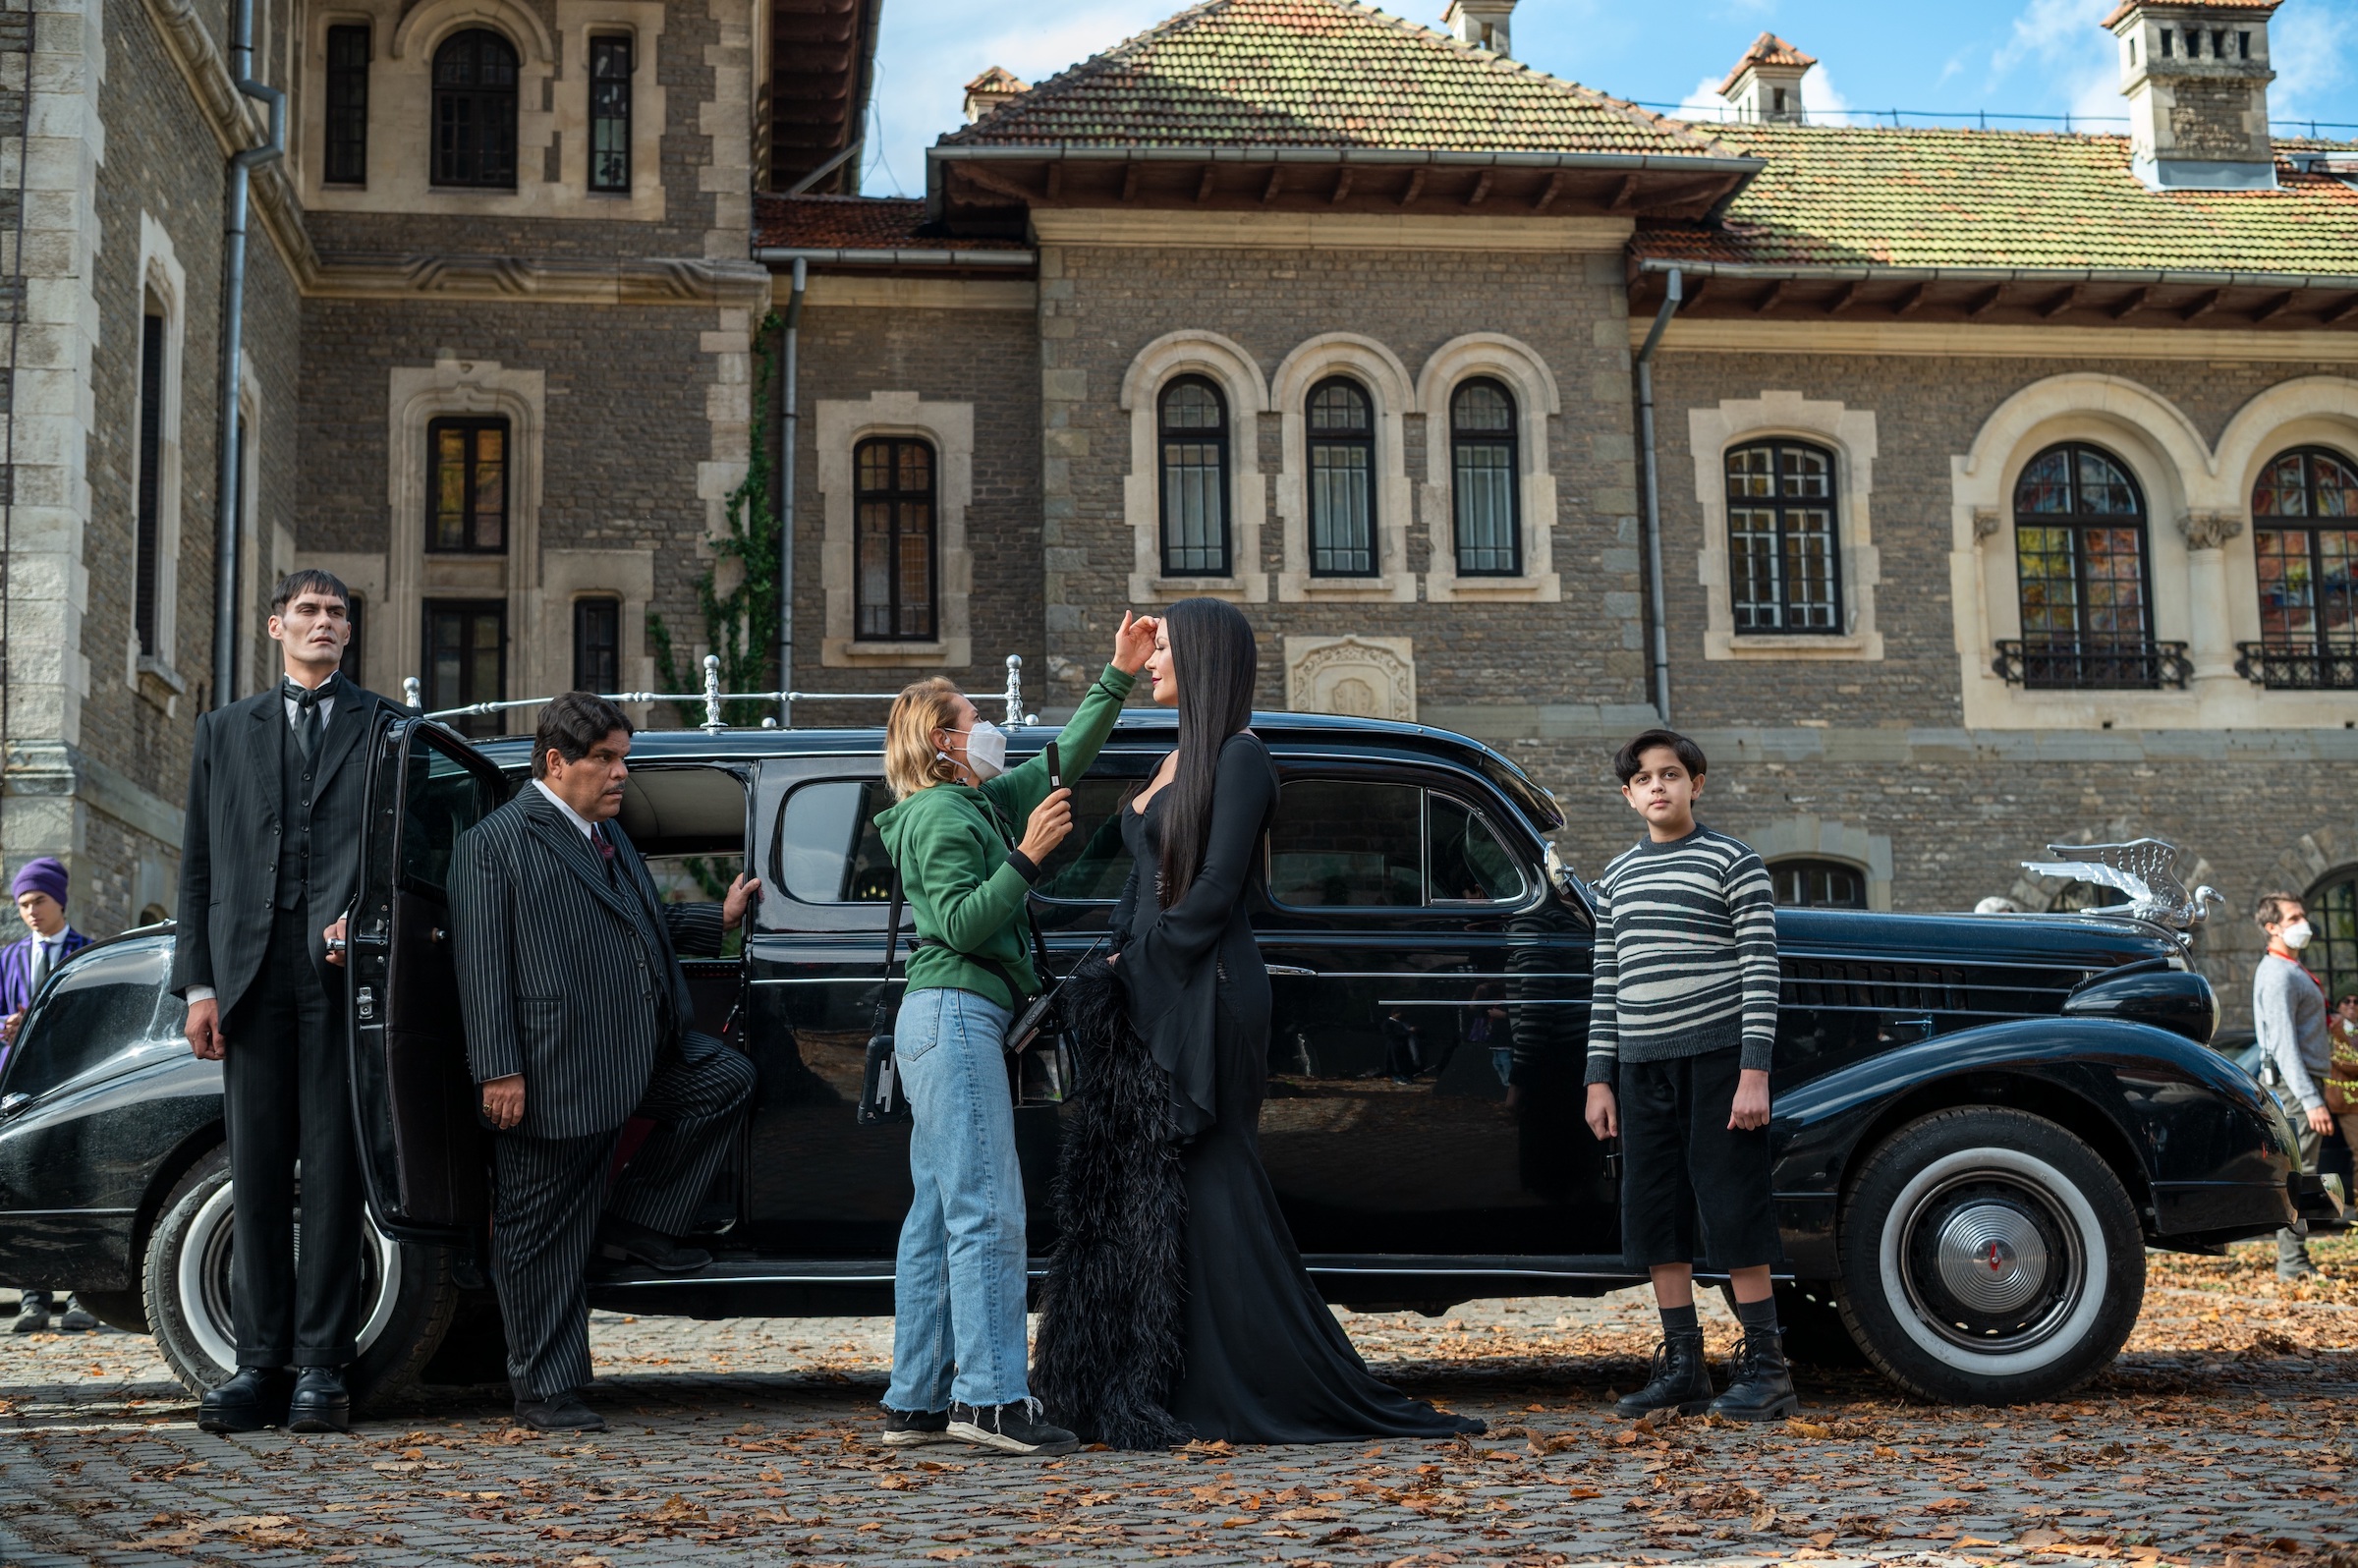 El mayordomo Lurch (George Burcea), Gomez (Luis Guzmán), Morticia (Catherine Zeta-Jones) y Pugsley (Issac Ordonez) visitan Nevermore Academy para el fin de semana de padres.  (Vlad Cioplea—Netflix)